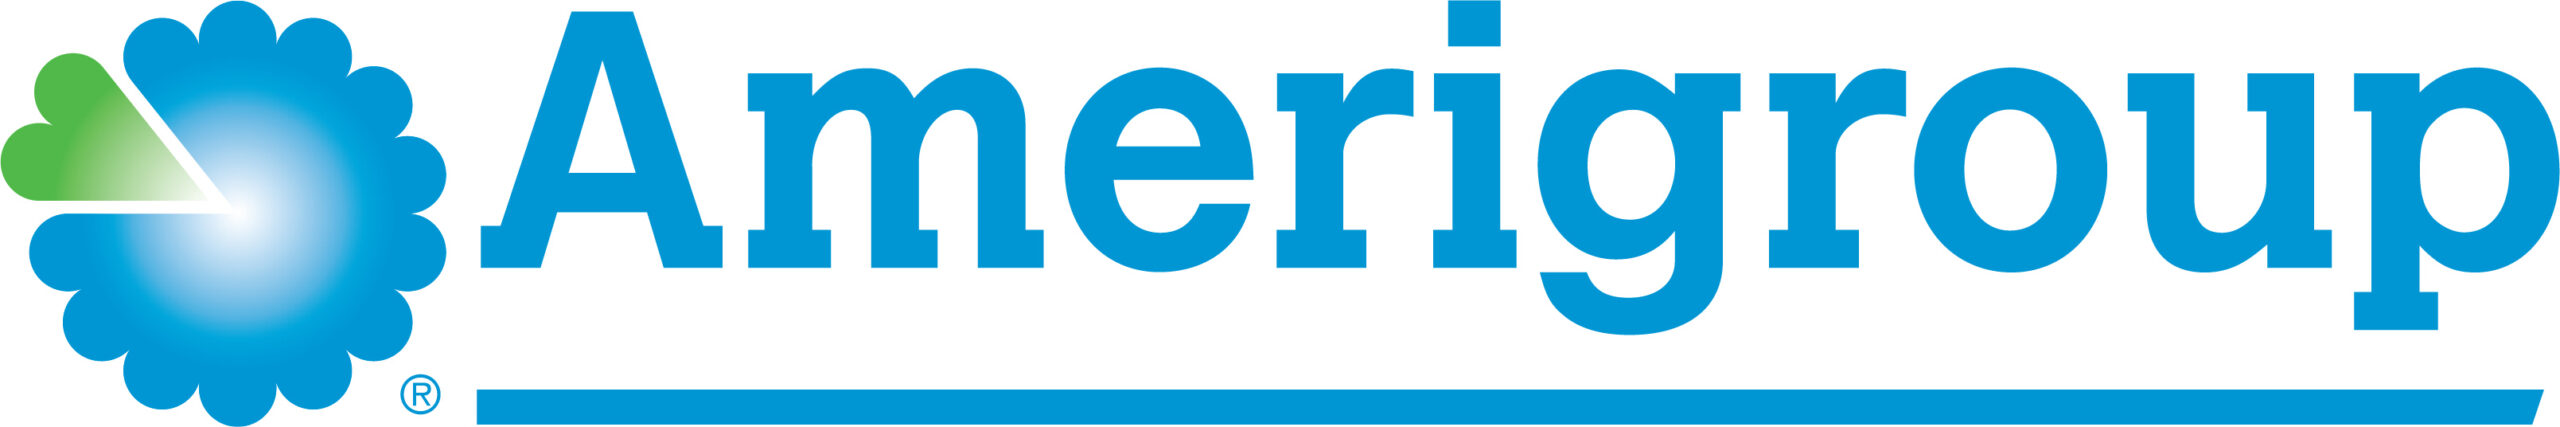 Amerigroup WA Blu&Green Logo (JPG version) 2021